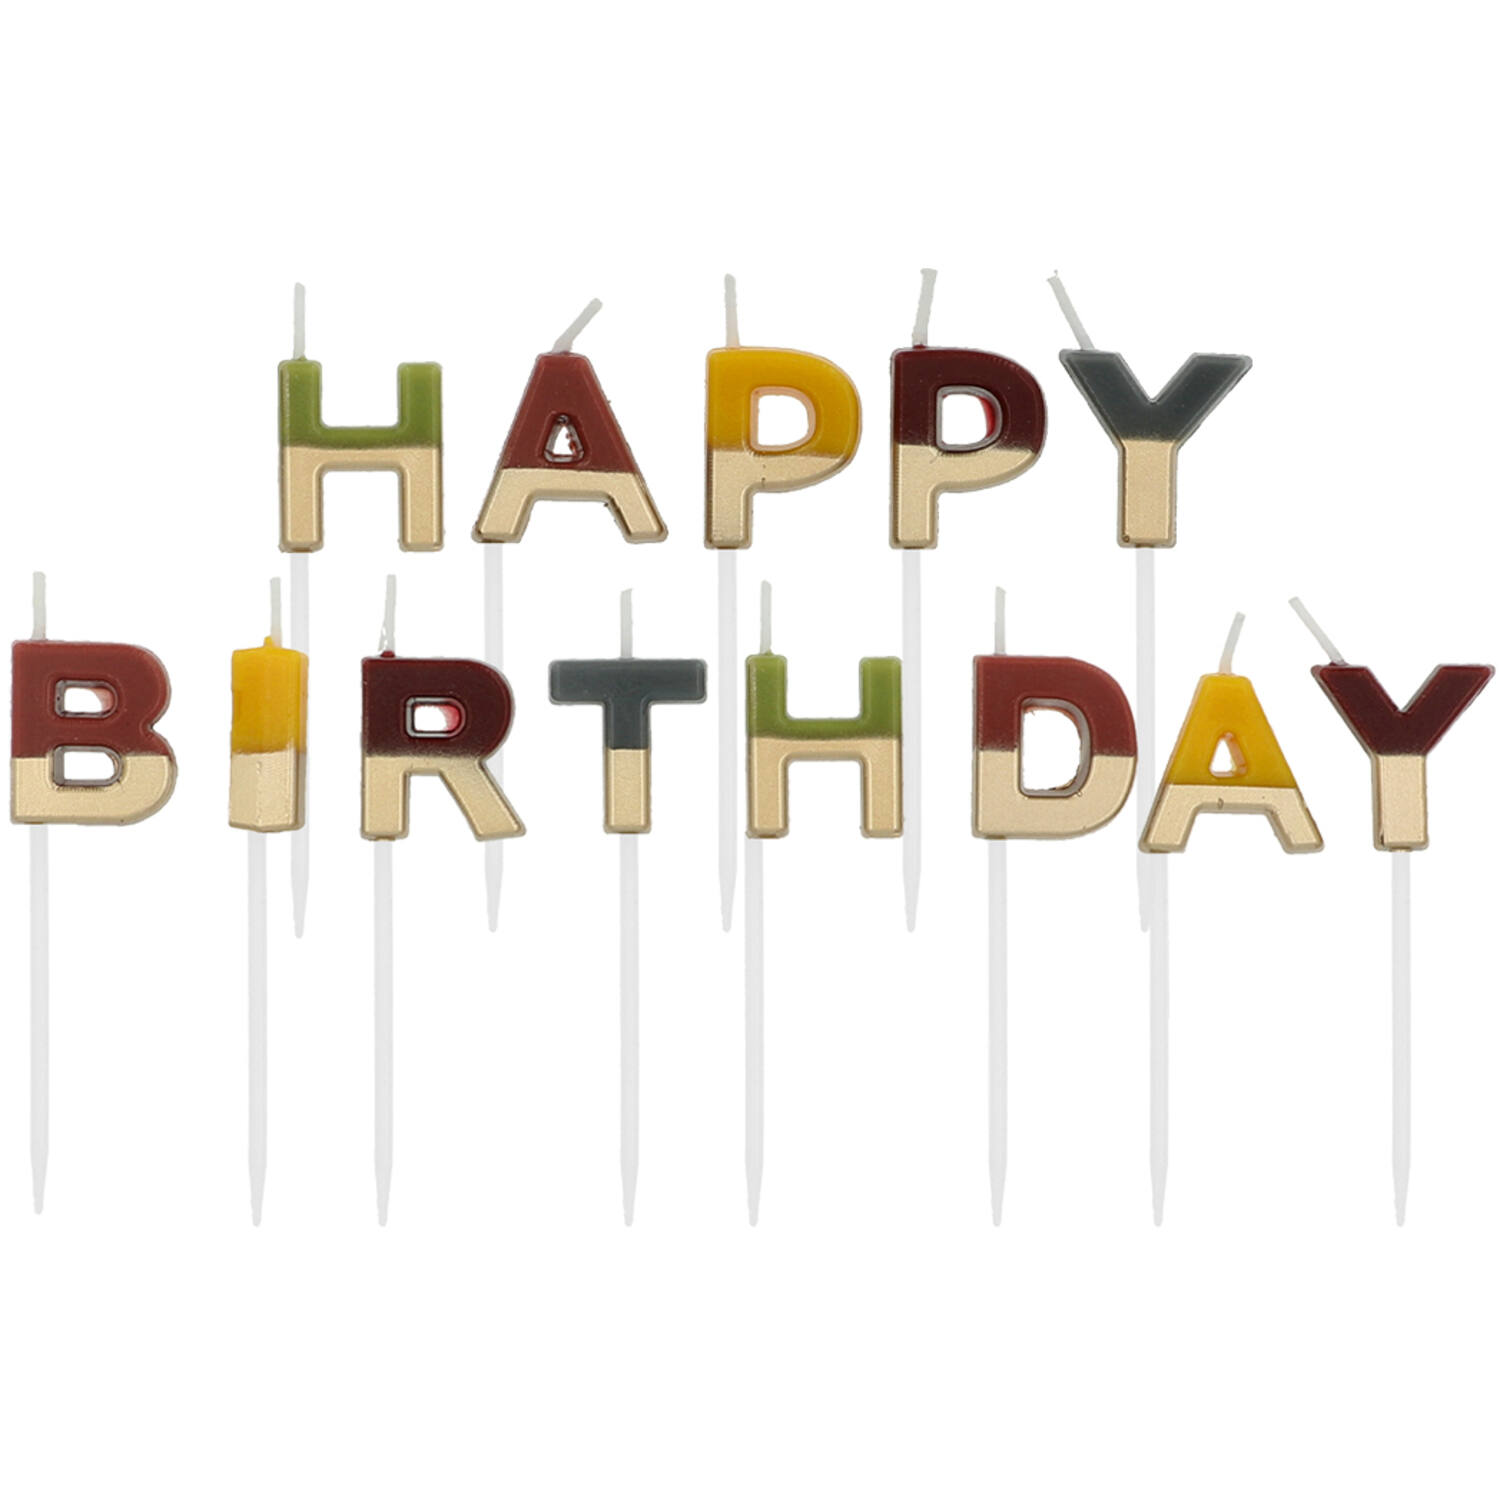 NEU Geburtstags-Kerzen-Set Happy Birthday, gold-bunt, ca. 2cm